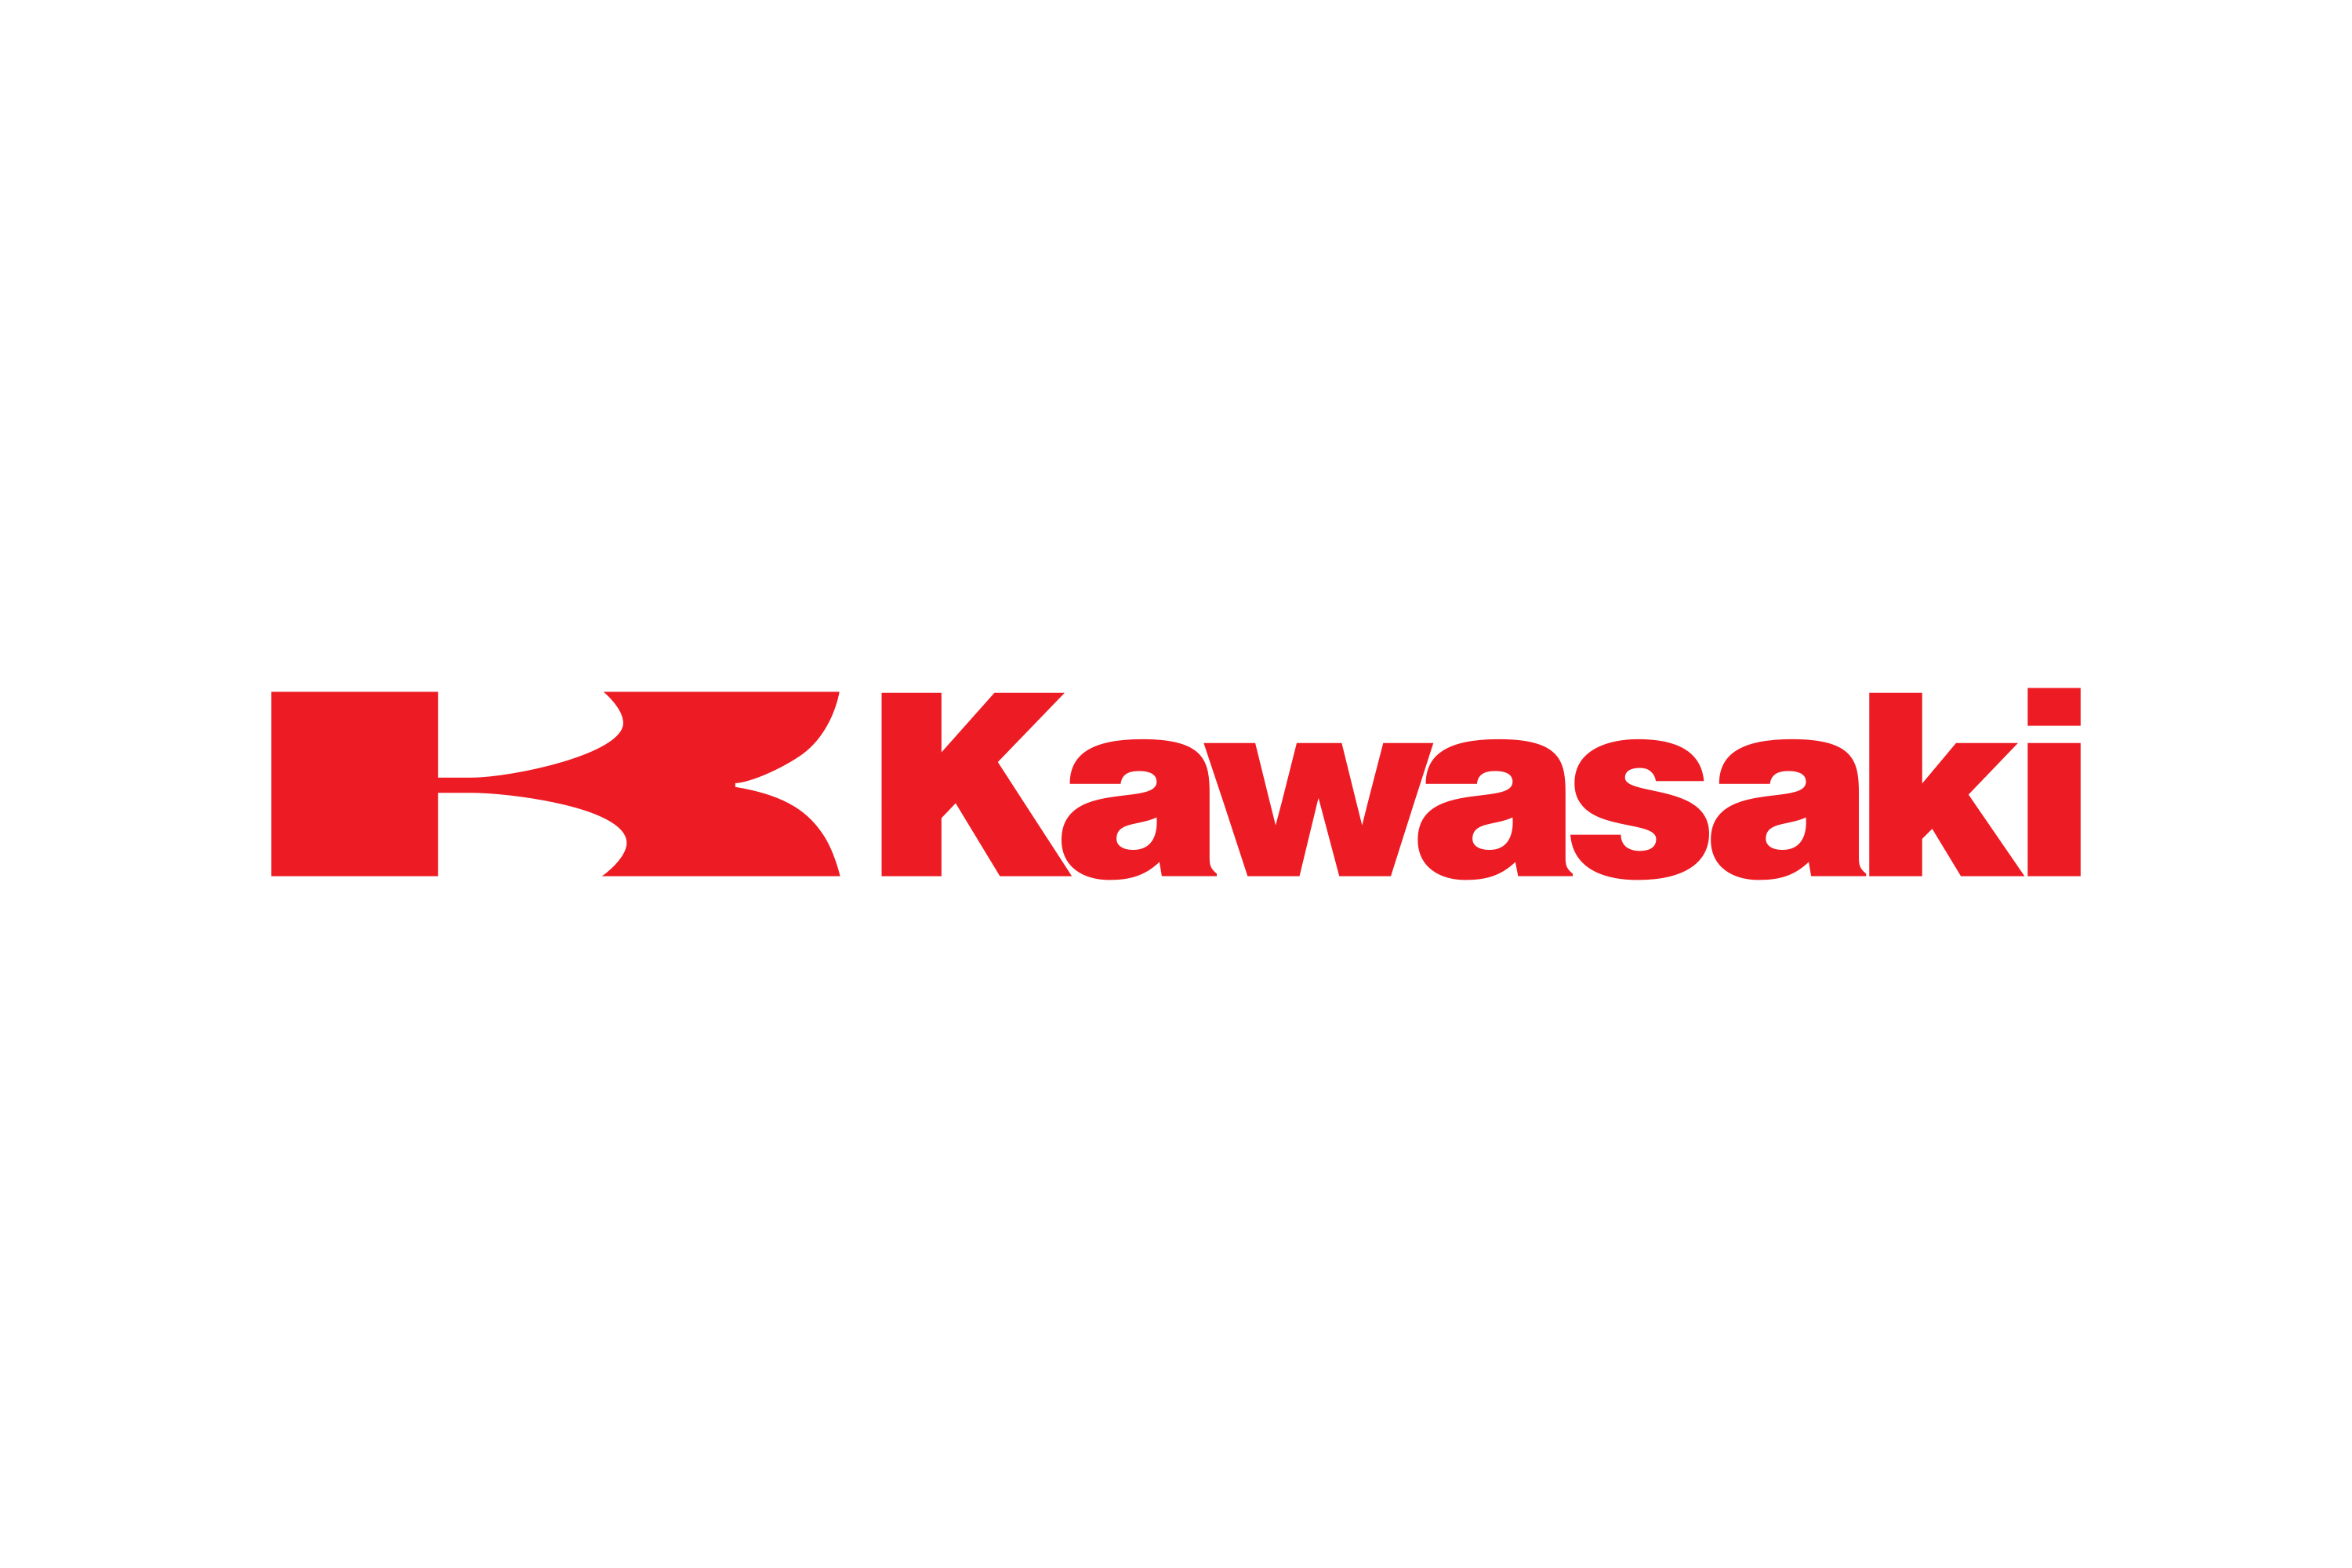 At tilpasse sig Utænkelig Ræv Download Kawasaki Heavy Industries Motorcycle & Engine Logo in SVG Vector  or PNG File Format - Logo.wine